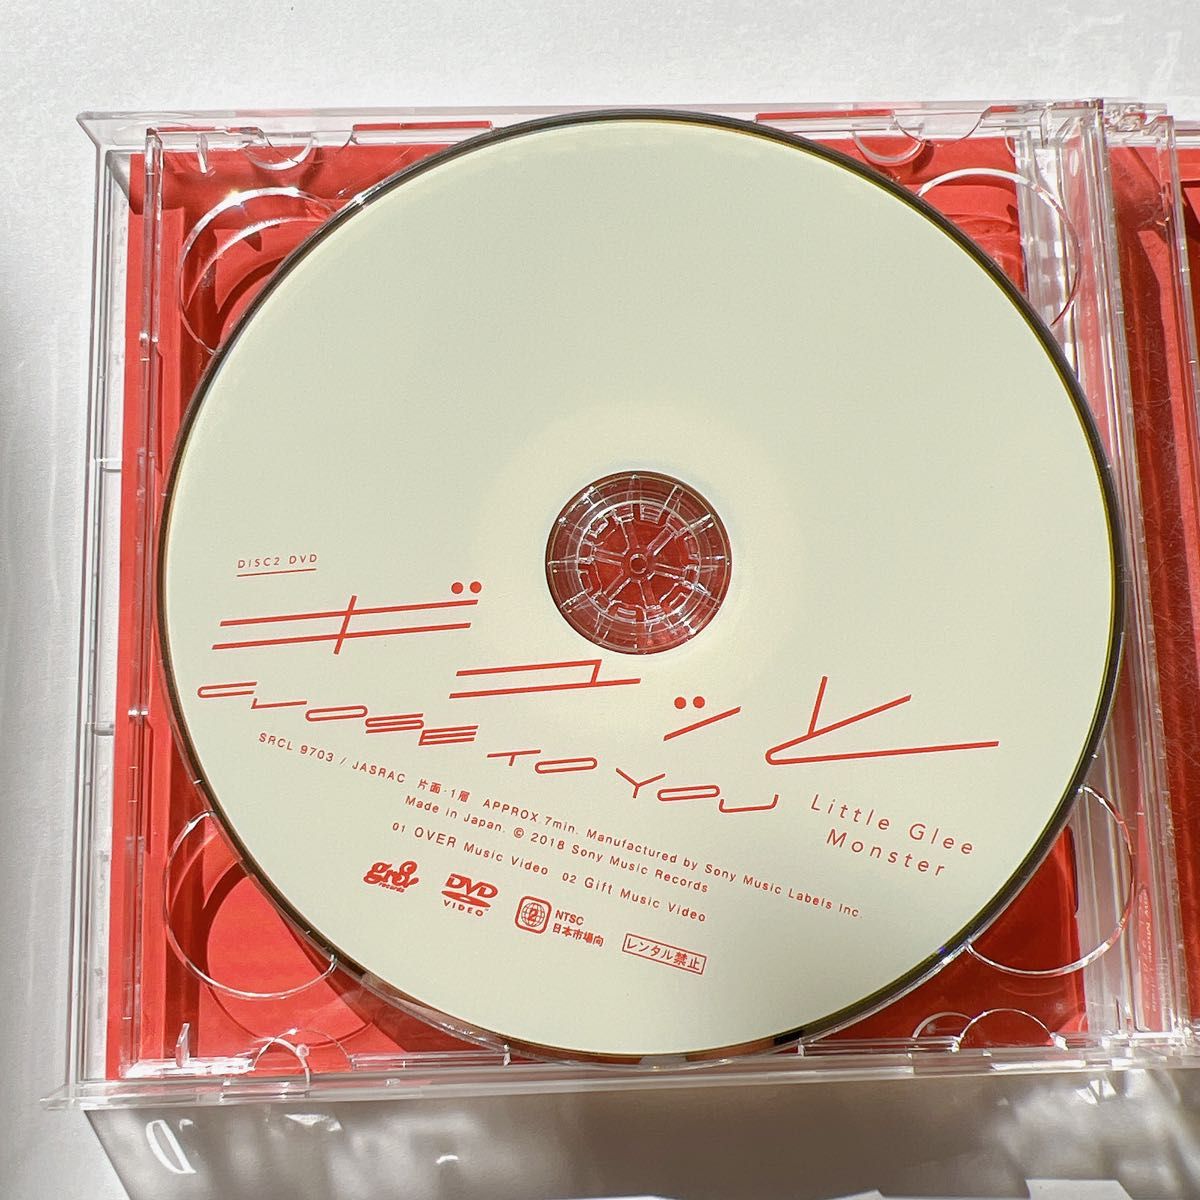 初回生産限定盤 Little Glee Monster CD+DVD/ギュッと/CLOSE TO YOU